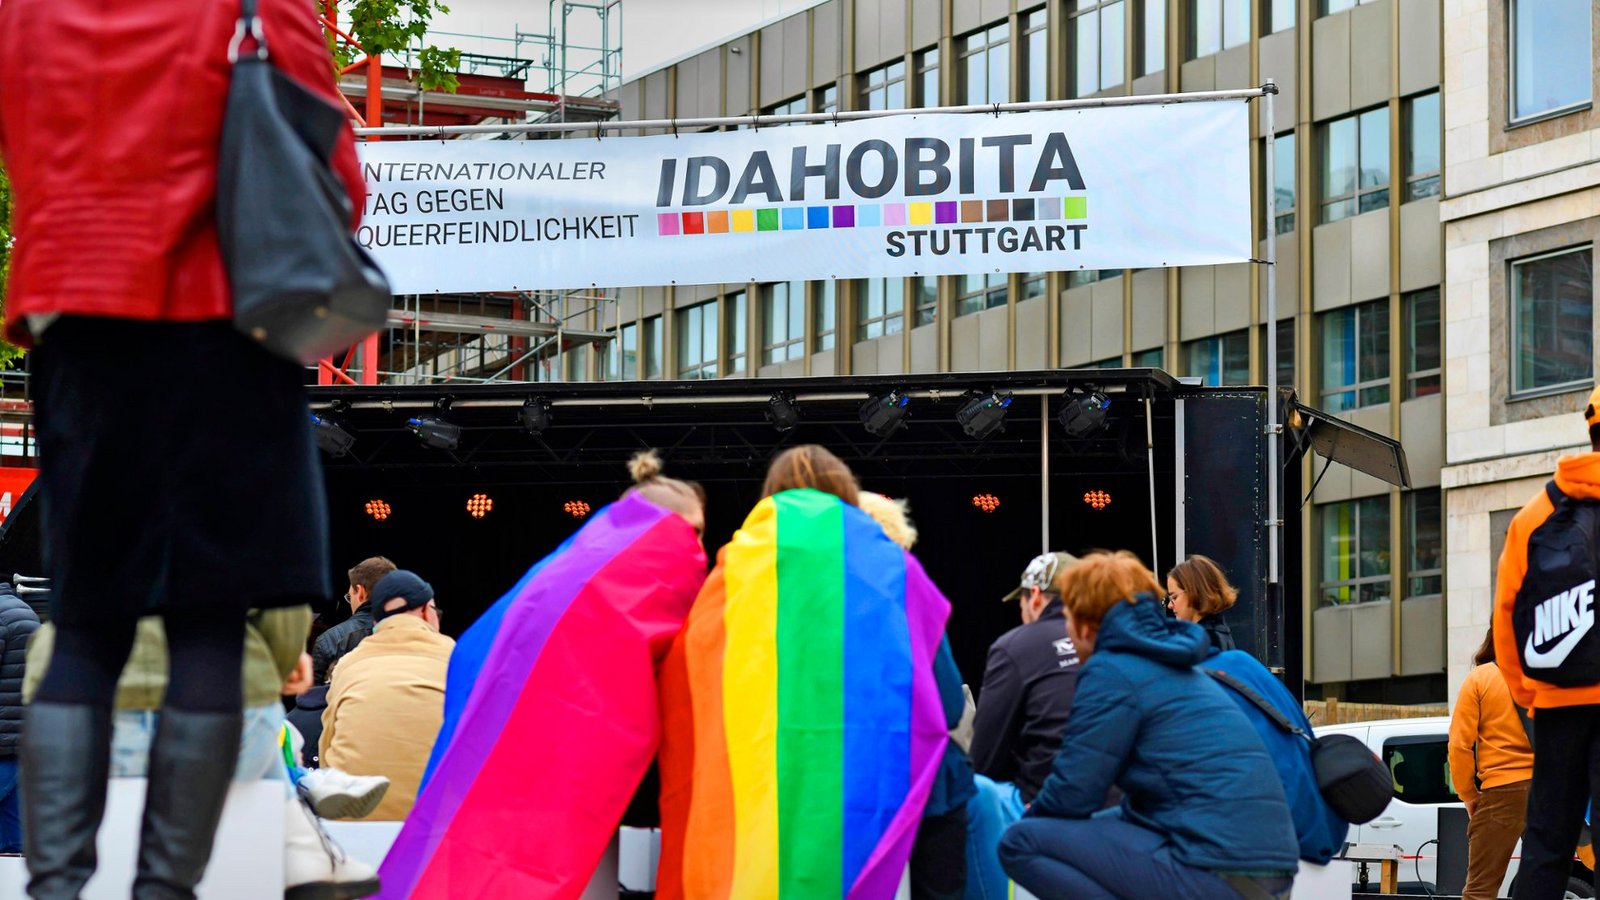 Die Regenbogenfahne wurde bei der Kundgebung zum Idahobita auf dem Stuttgarter Marktplatz öfter gesehen.Foto: Lichtgut/Max Kovalenko